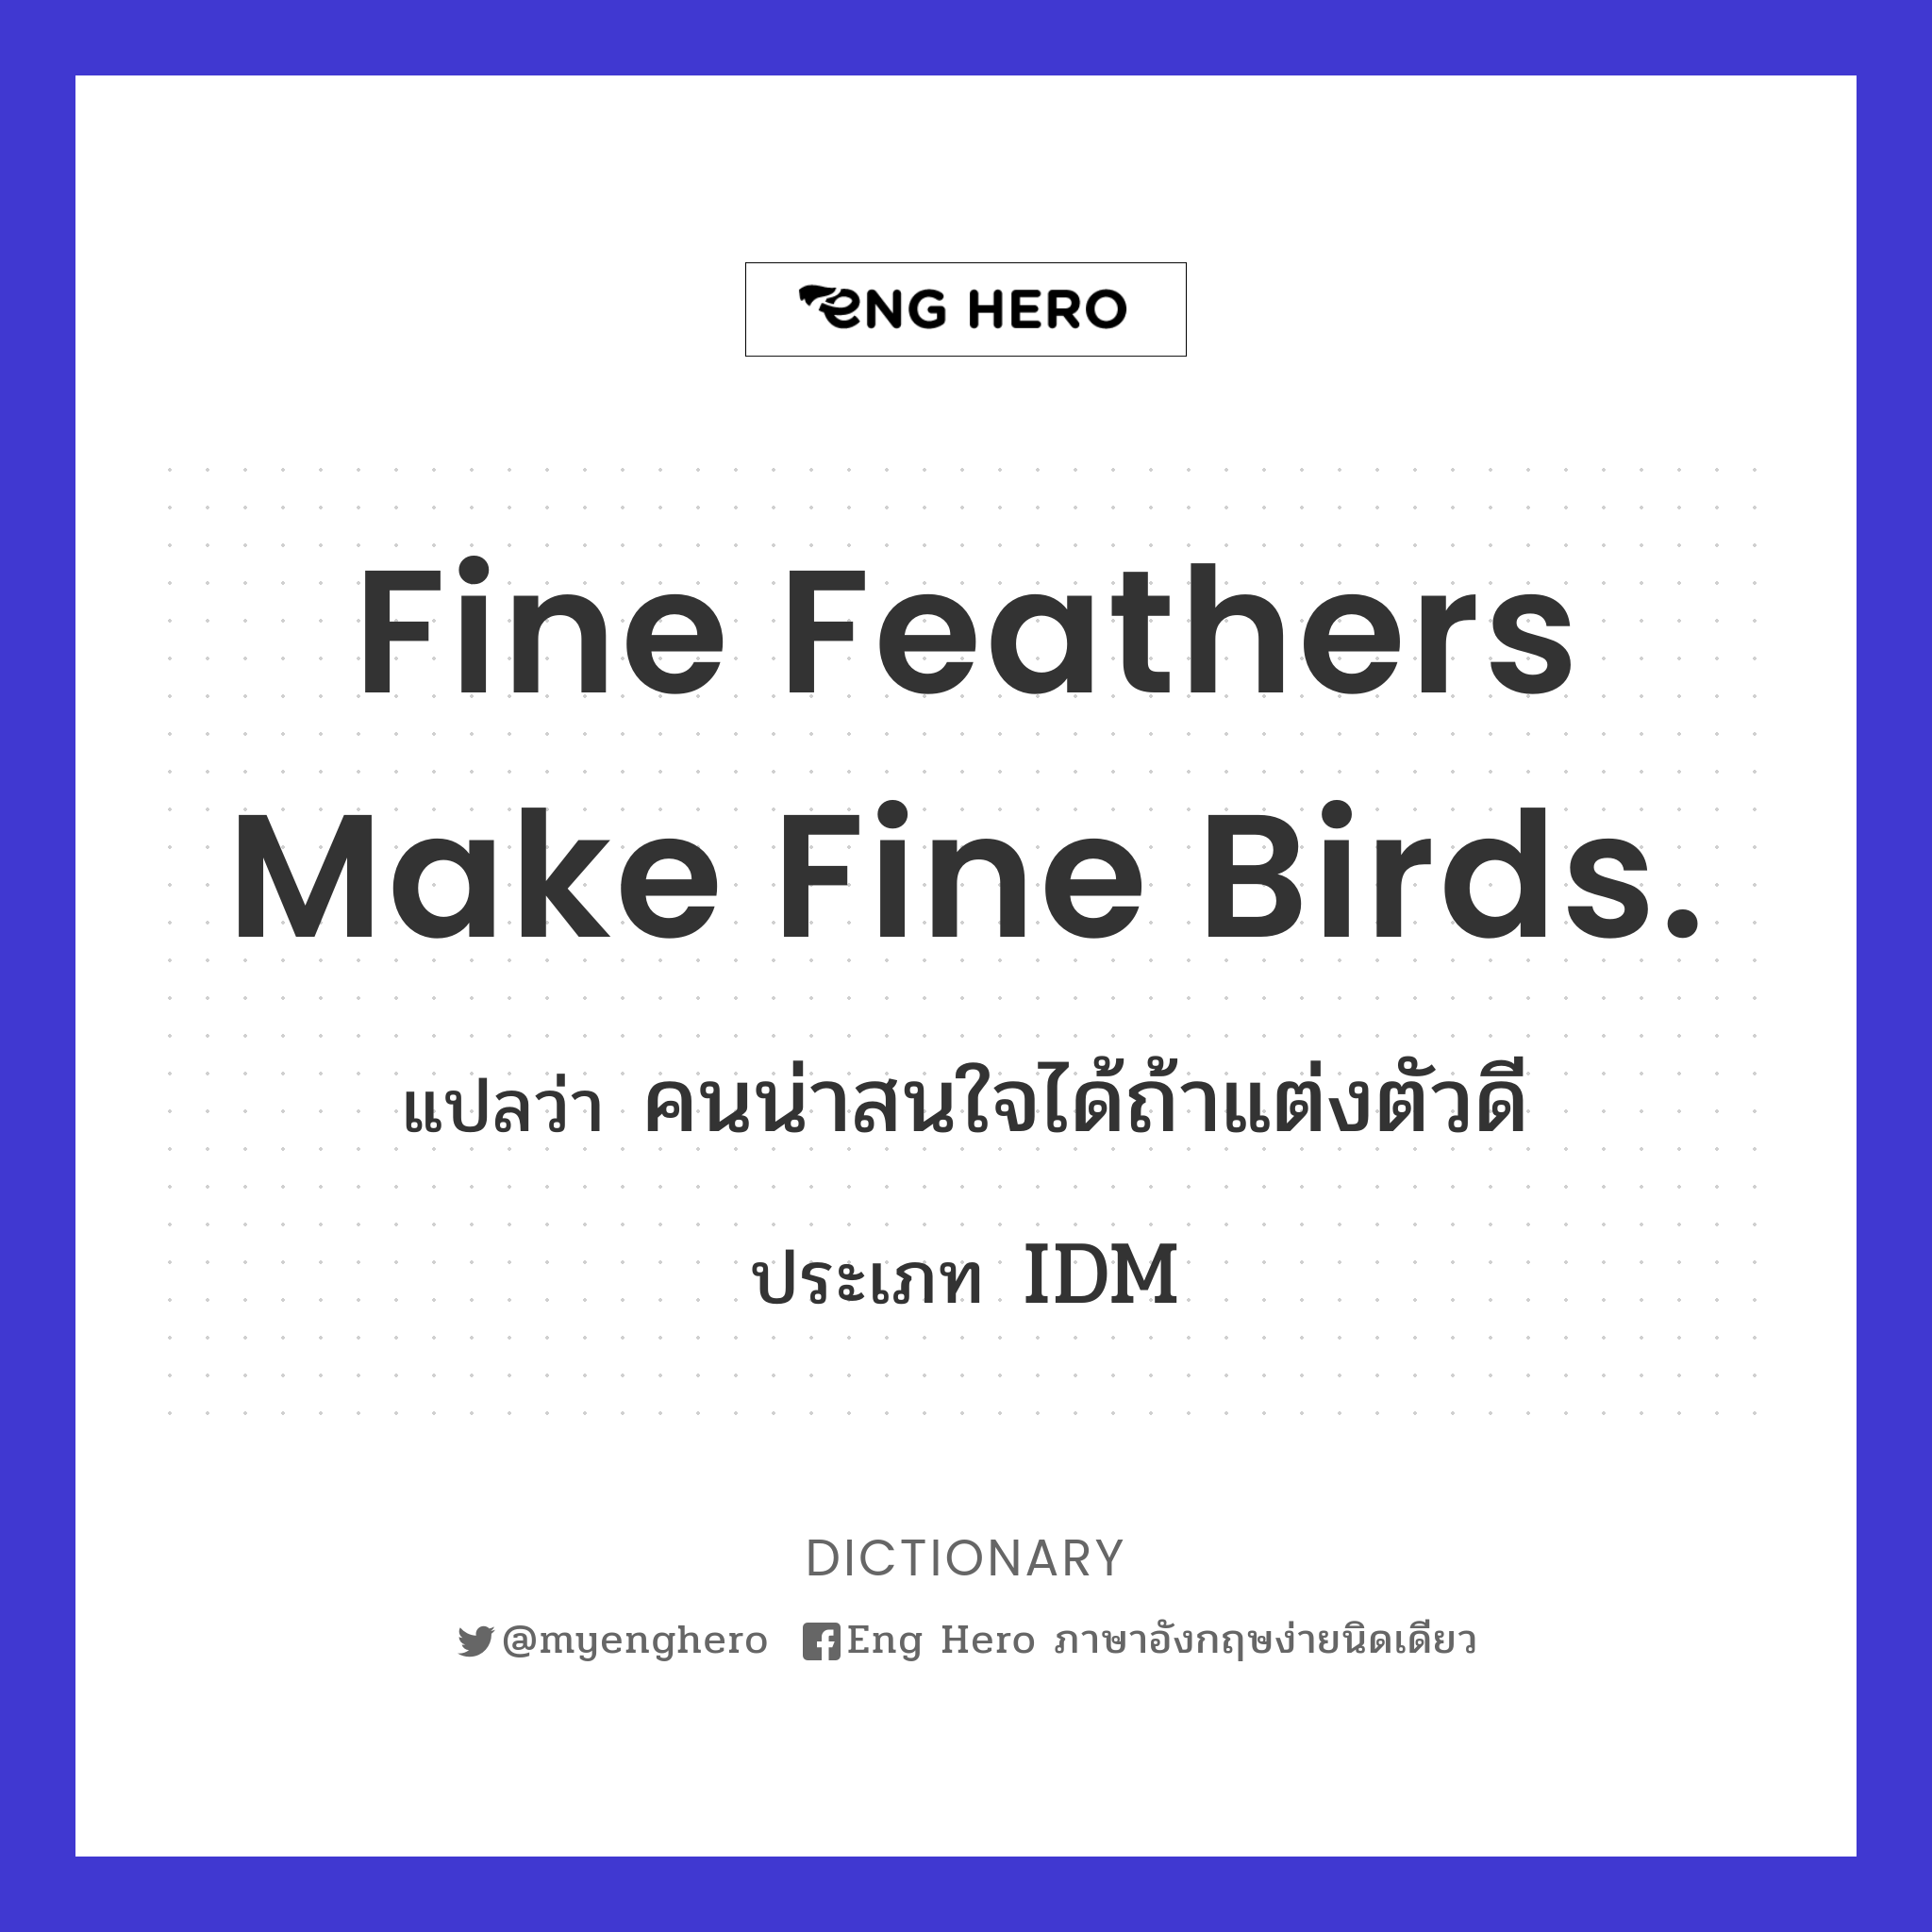 Fine feathers make fine birds.